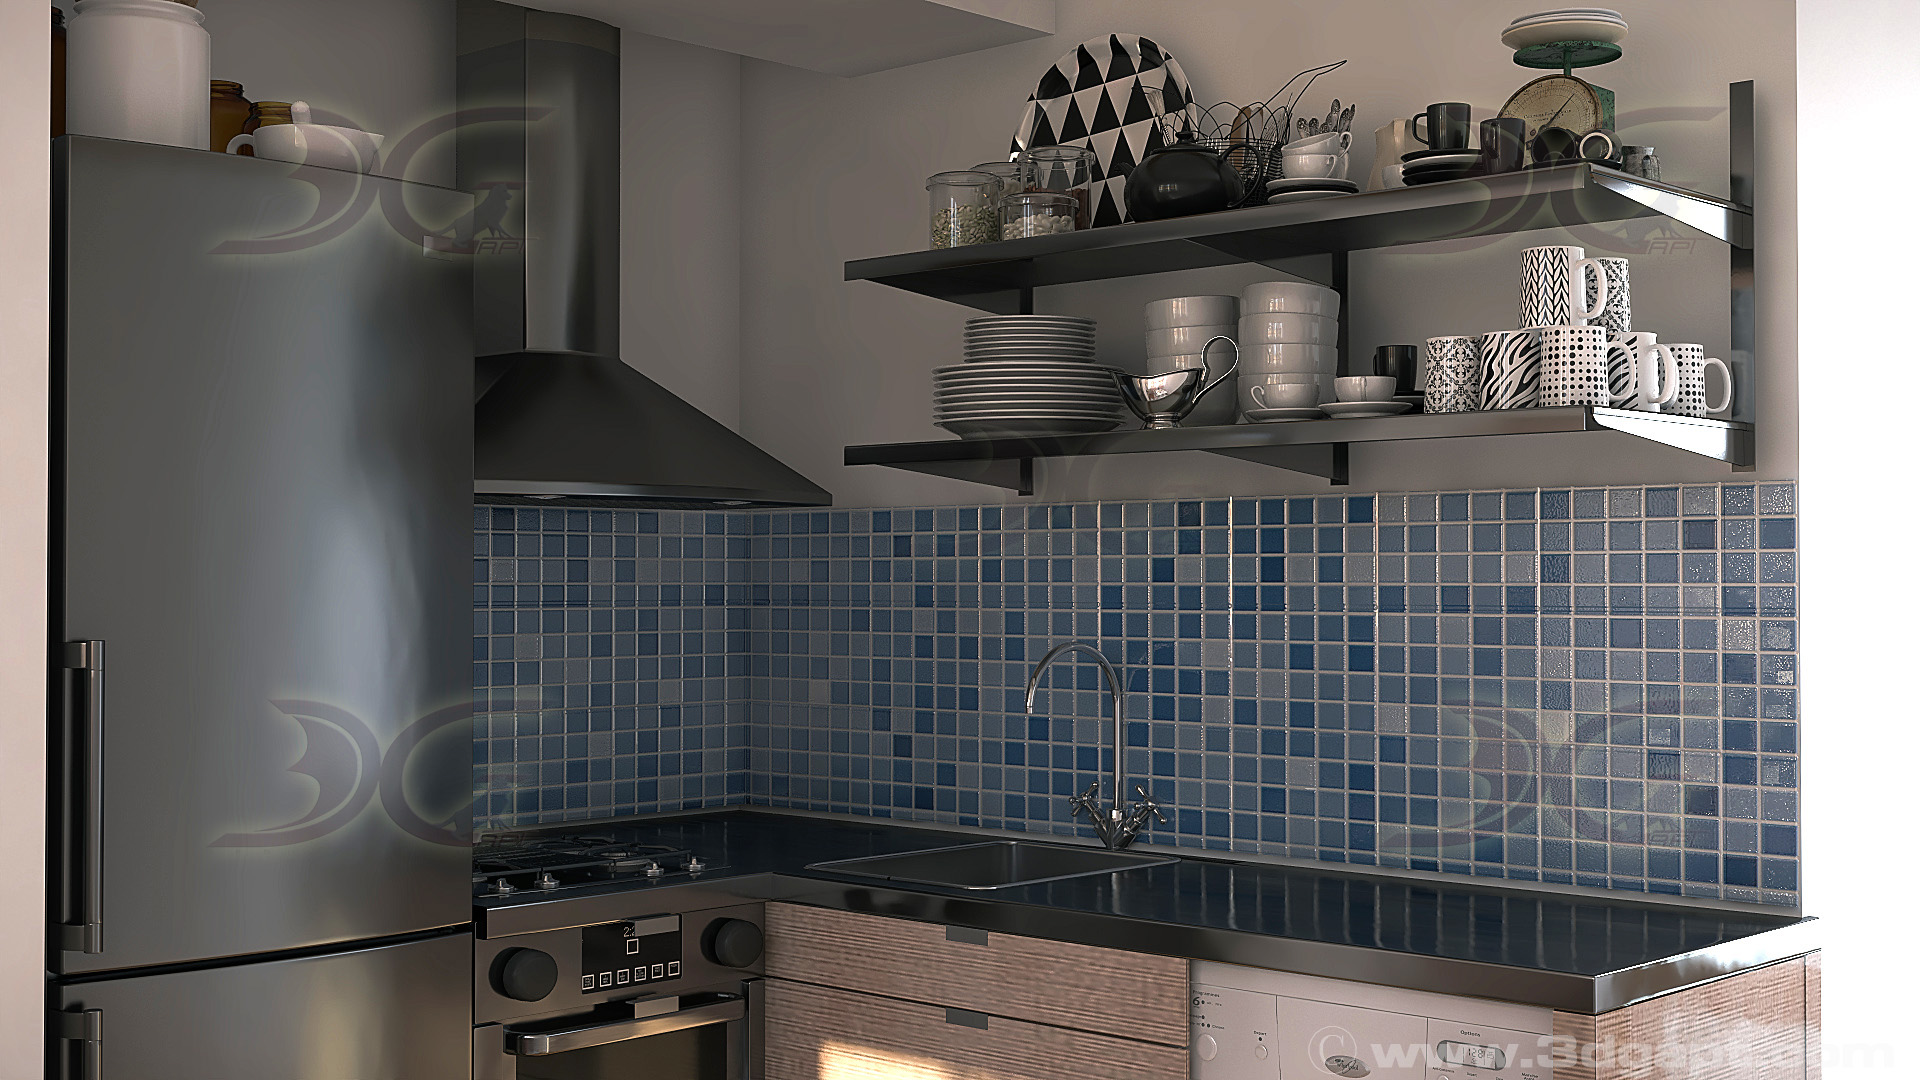 architecture interior kitchen-2versions 012